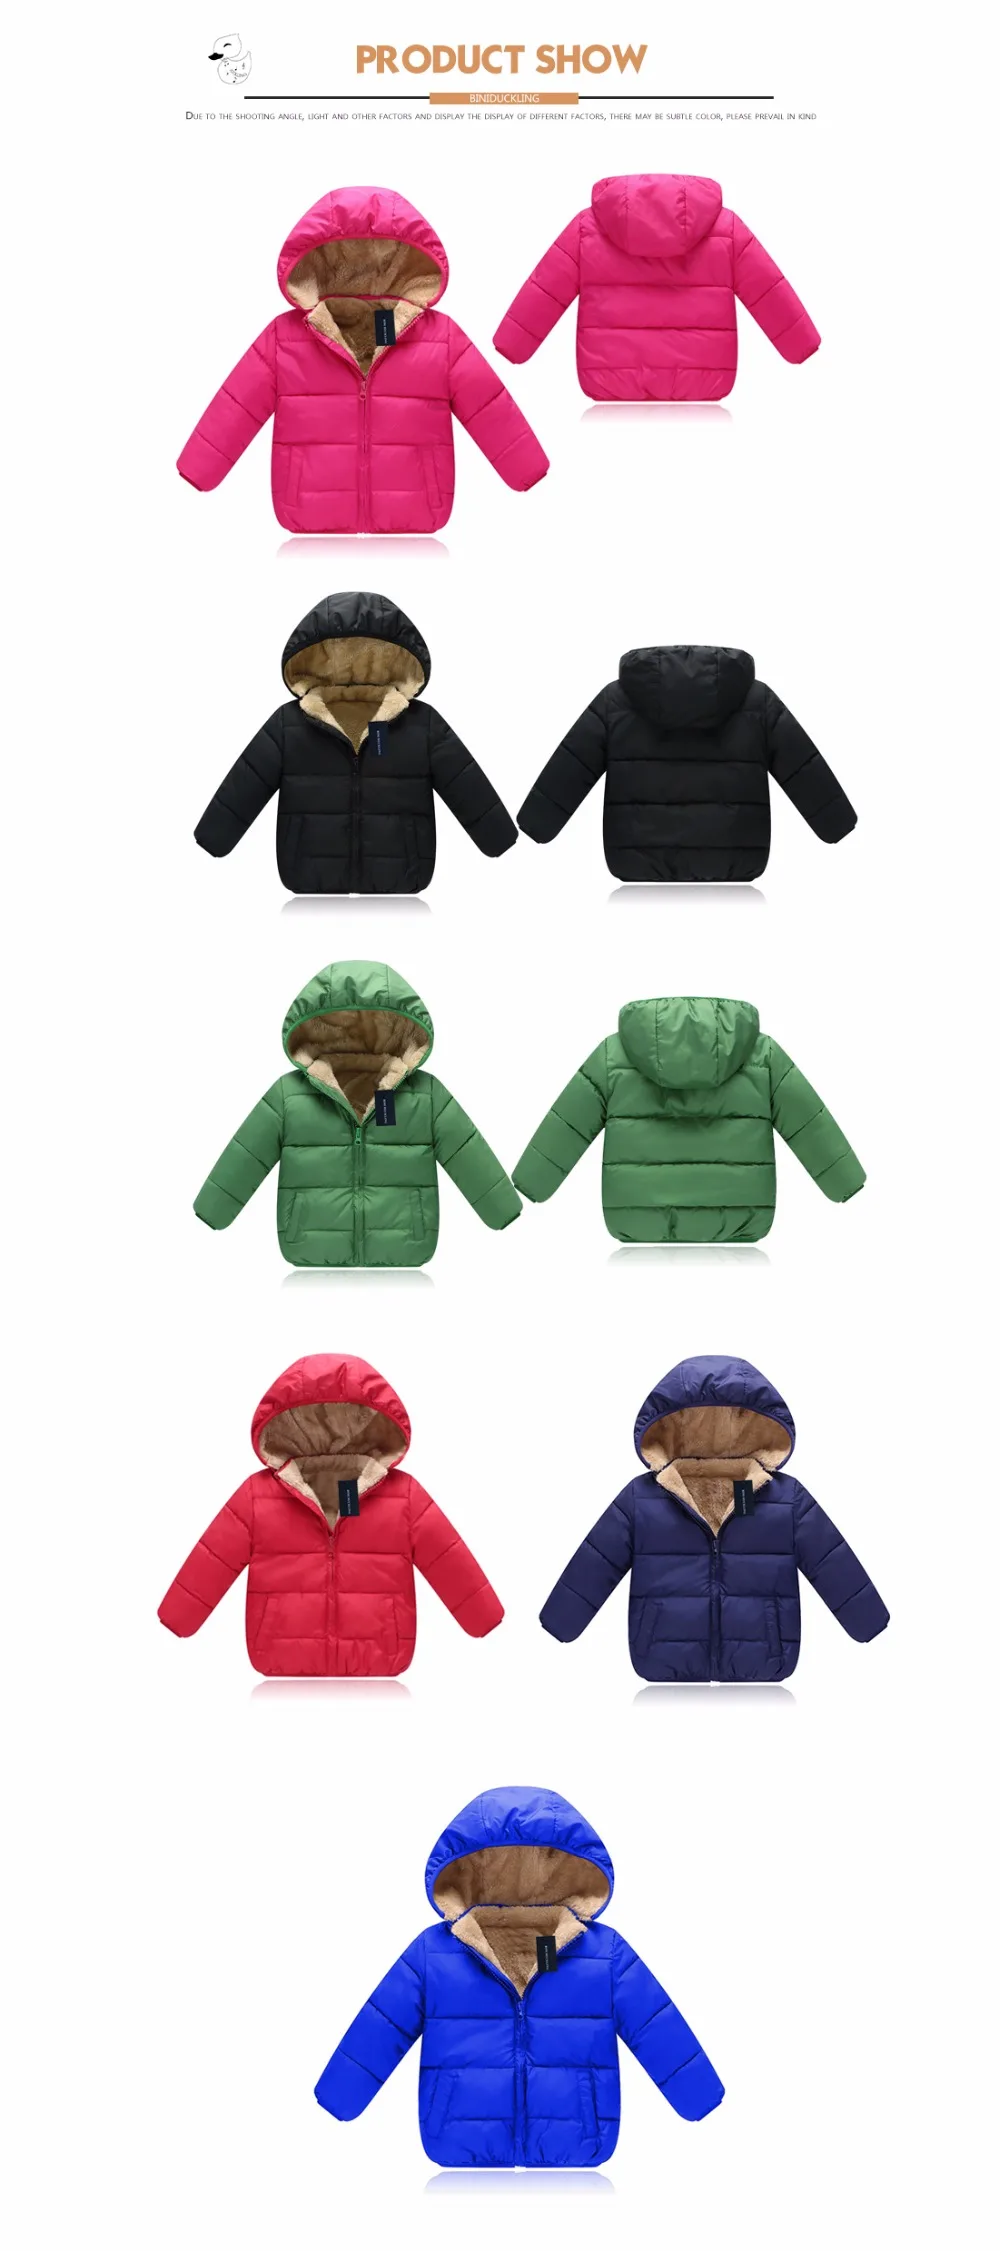 Biniduckling куртка для маленьких девочек детская одежда для девочек теплое пальто для девочек зимняя одежда Bebe Одежда и аксессуары для мальчиков Одежда для младенцев Детское зимнее пальто